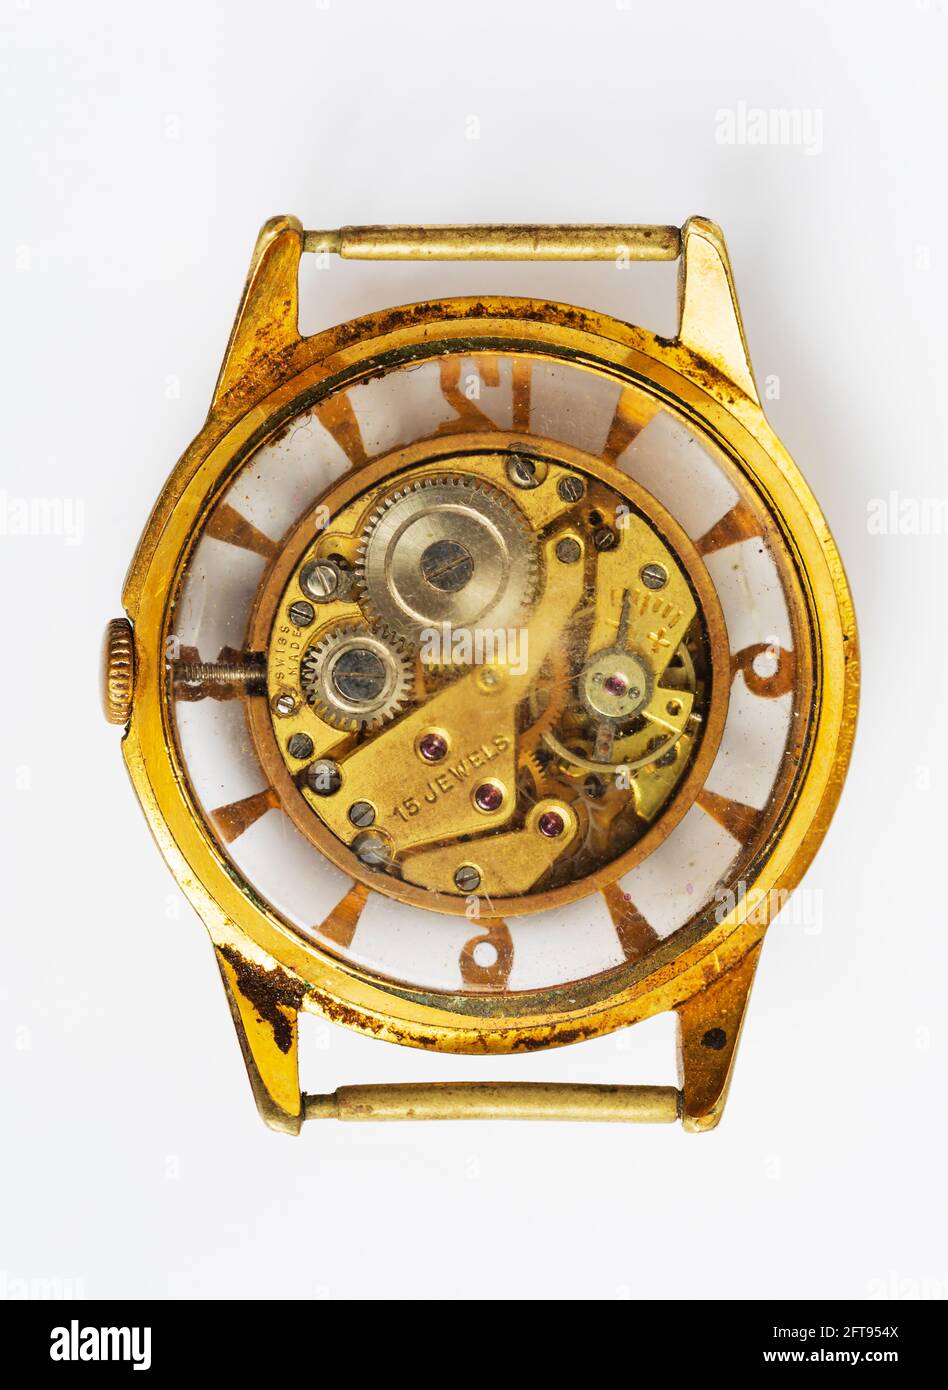 Reloj de pulsera antiguo con respaldo de cristal que muestra el movimiento interno. Foto de stock